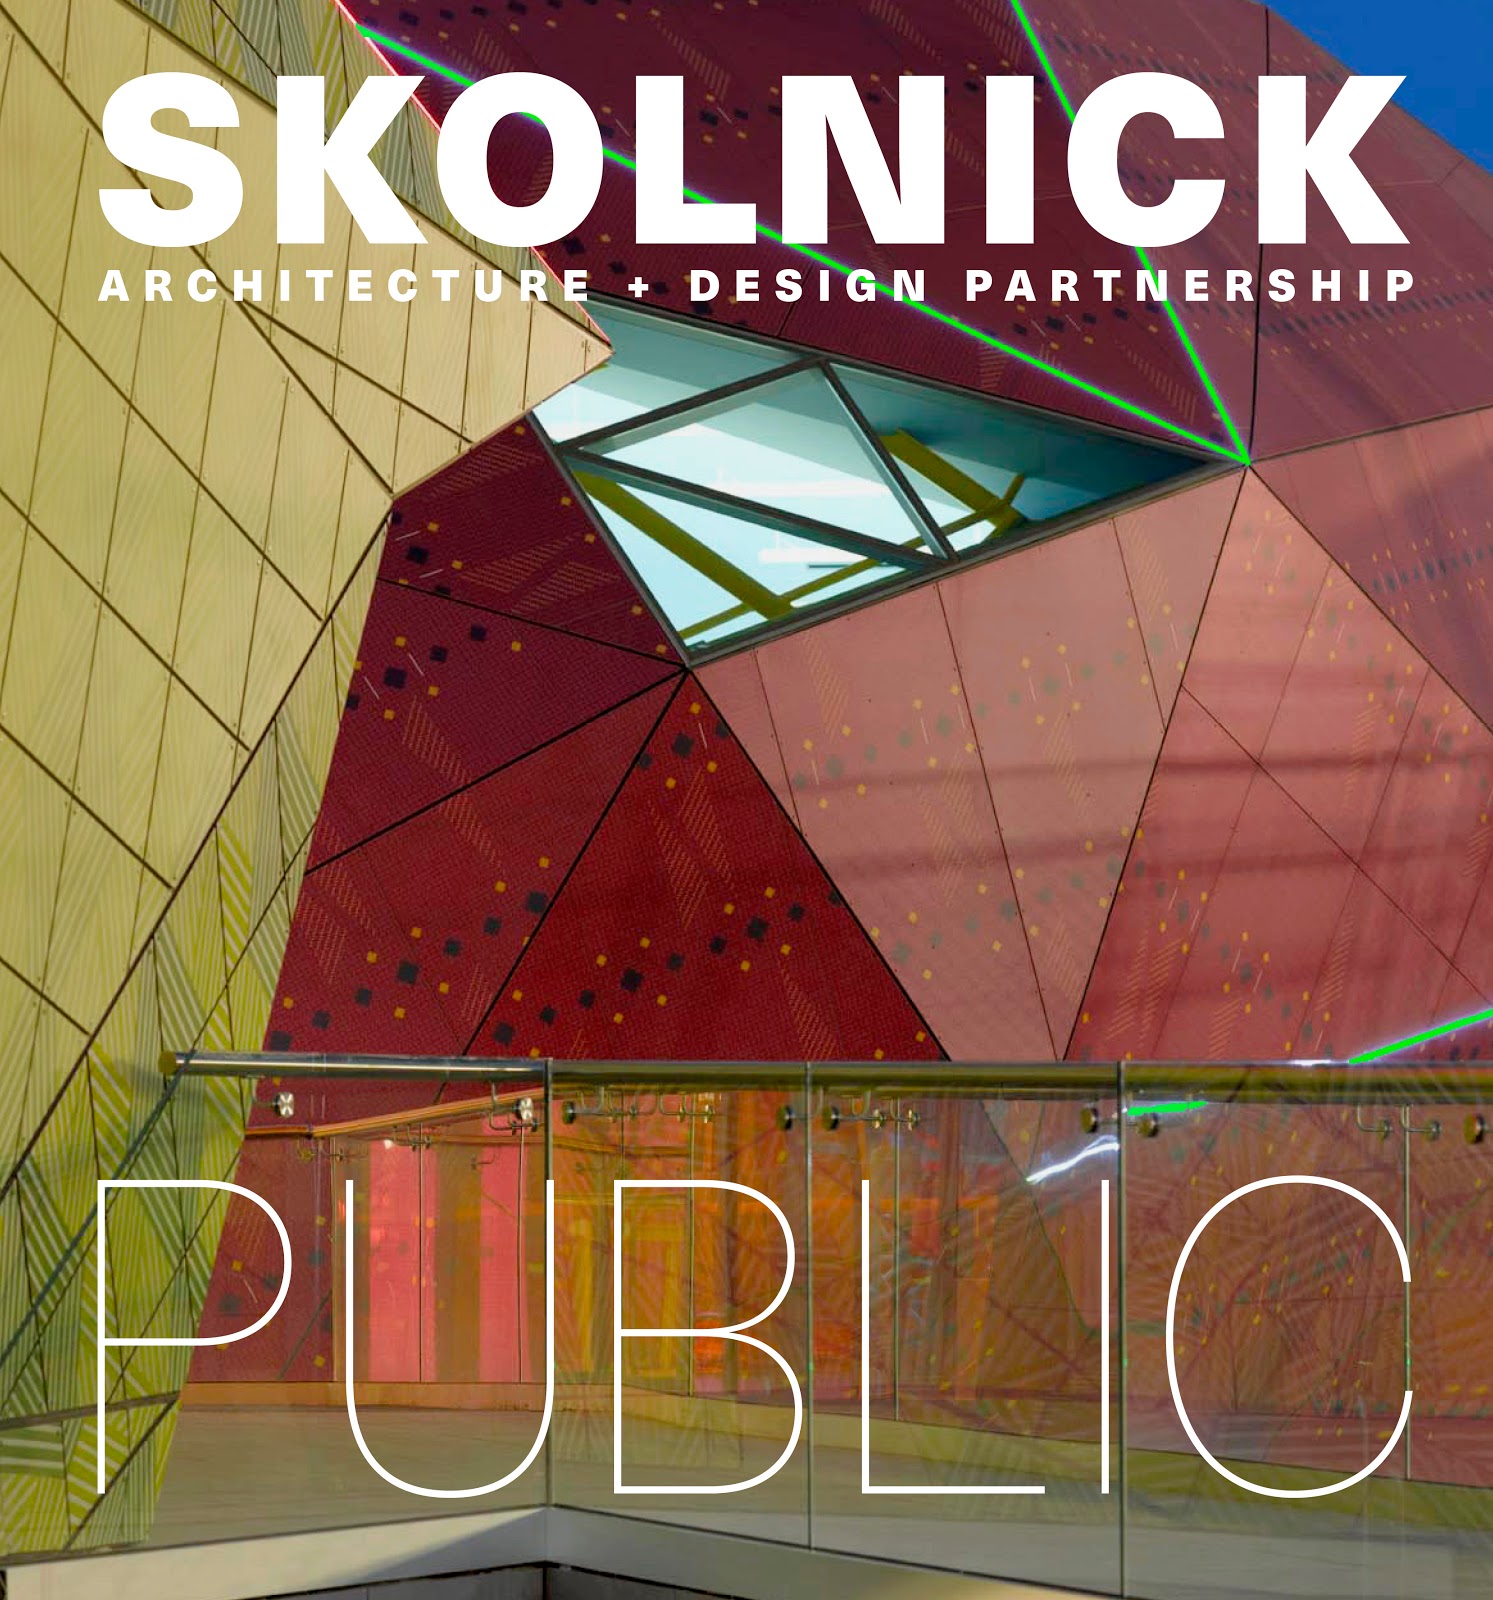 SKOLNICK Architecture + Design Partnership: Public/Private by Lee Skolnick